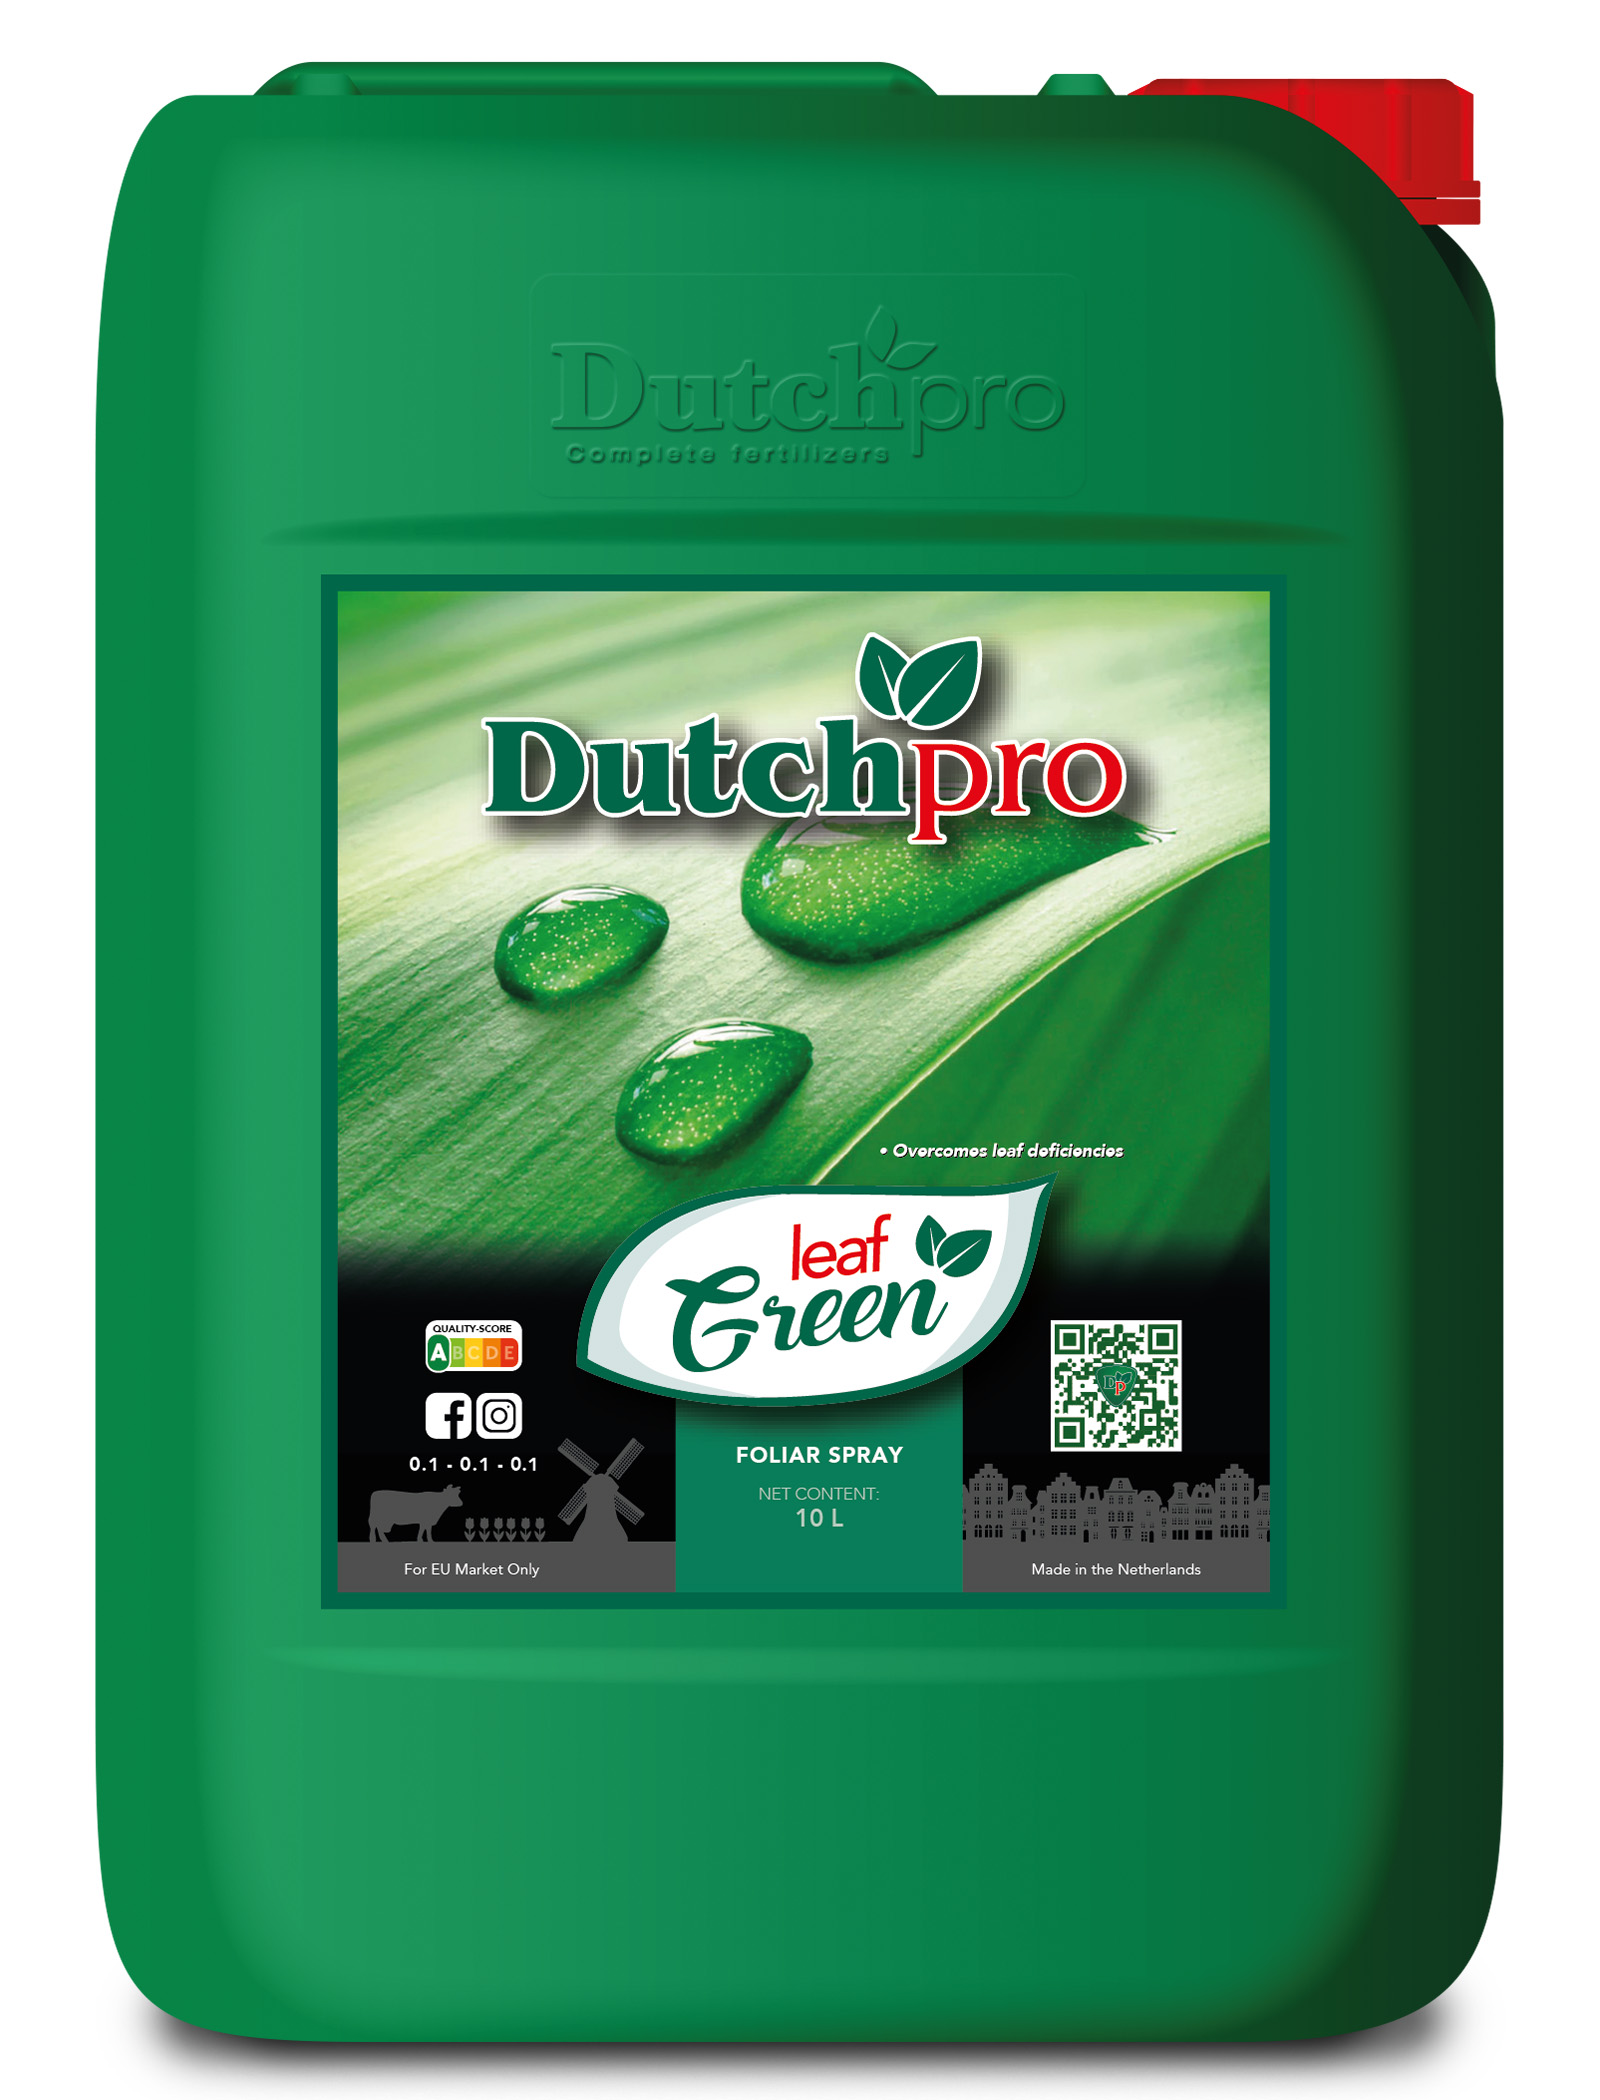 Dutchpro Leaf Green